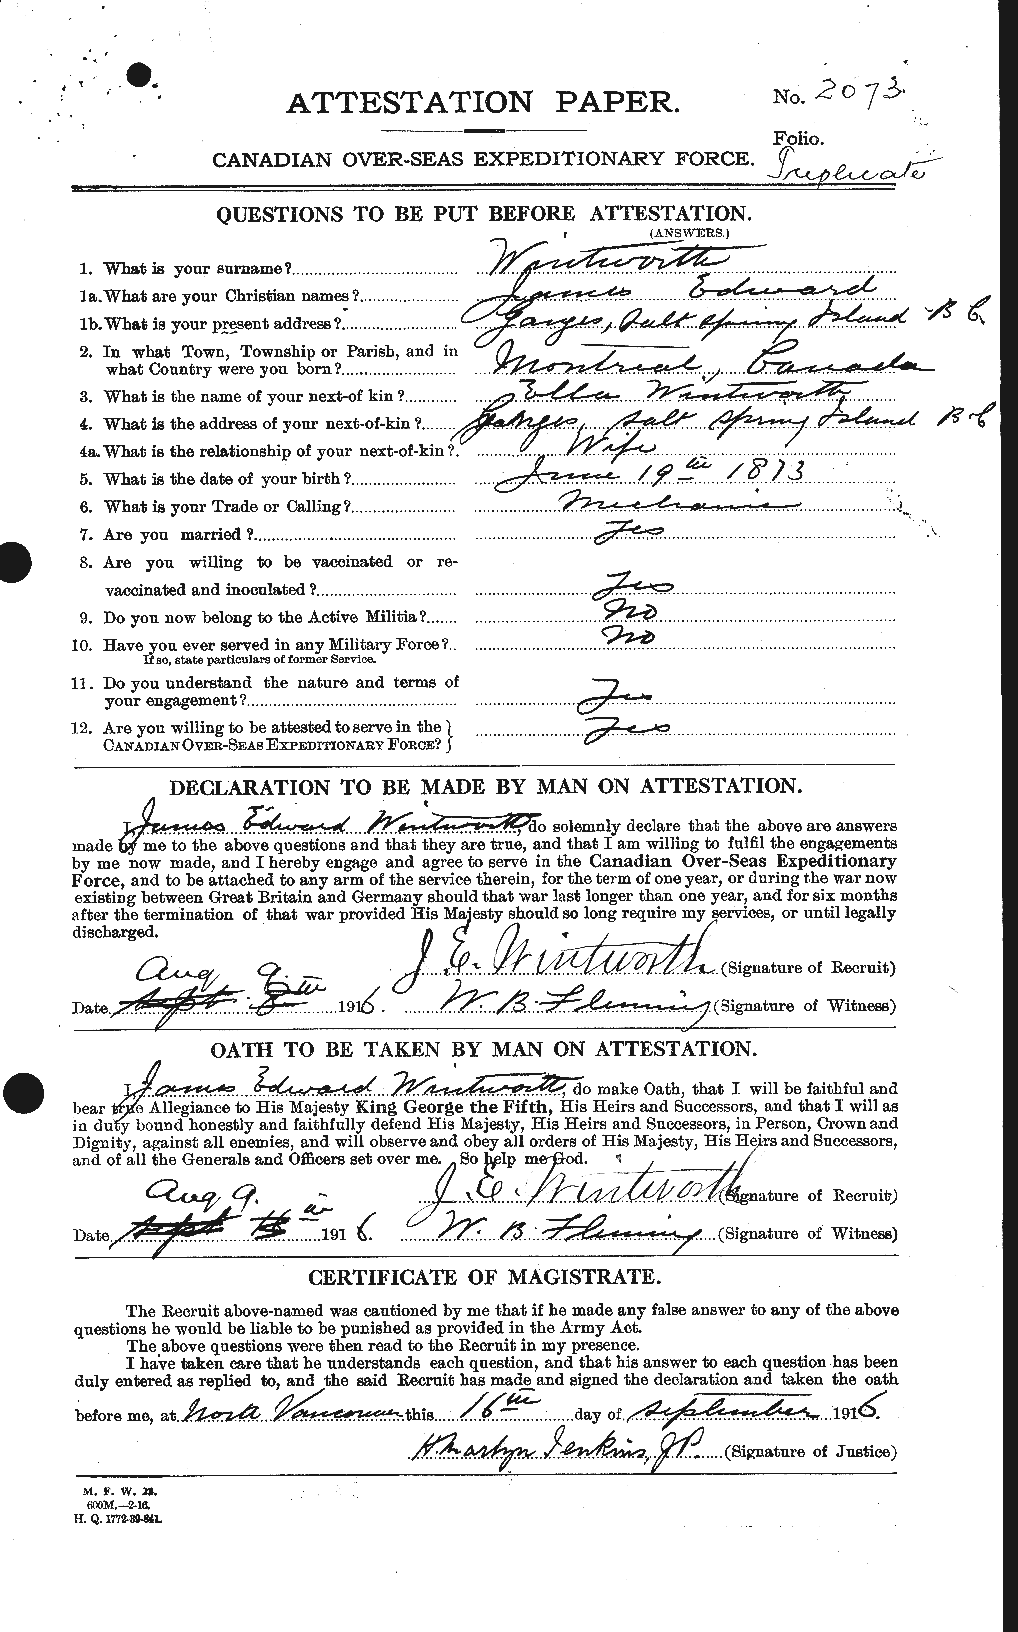 Dossiers du Personnel de la Première Guerre mondiale - CEC 685961a